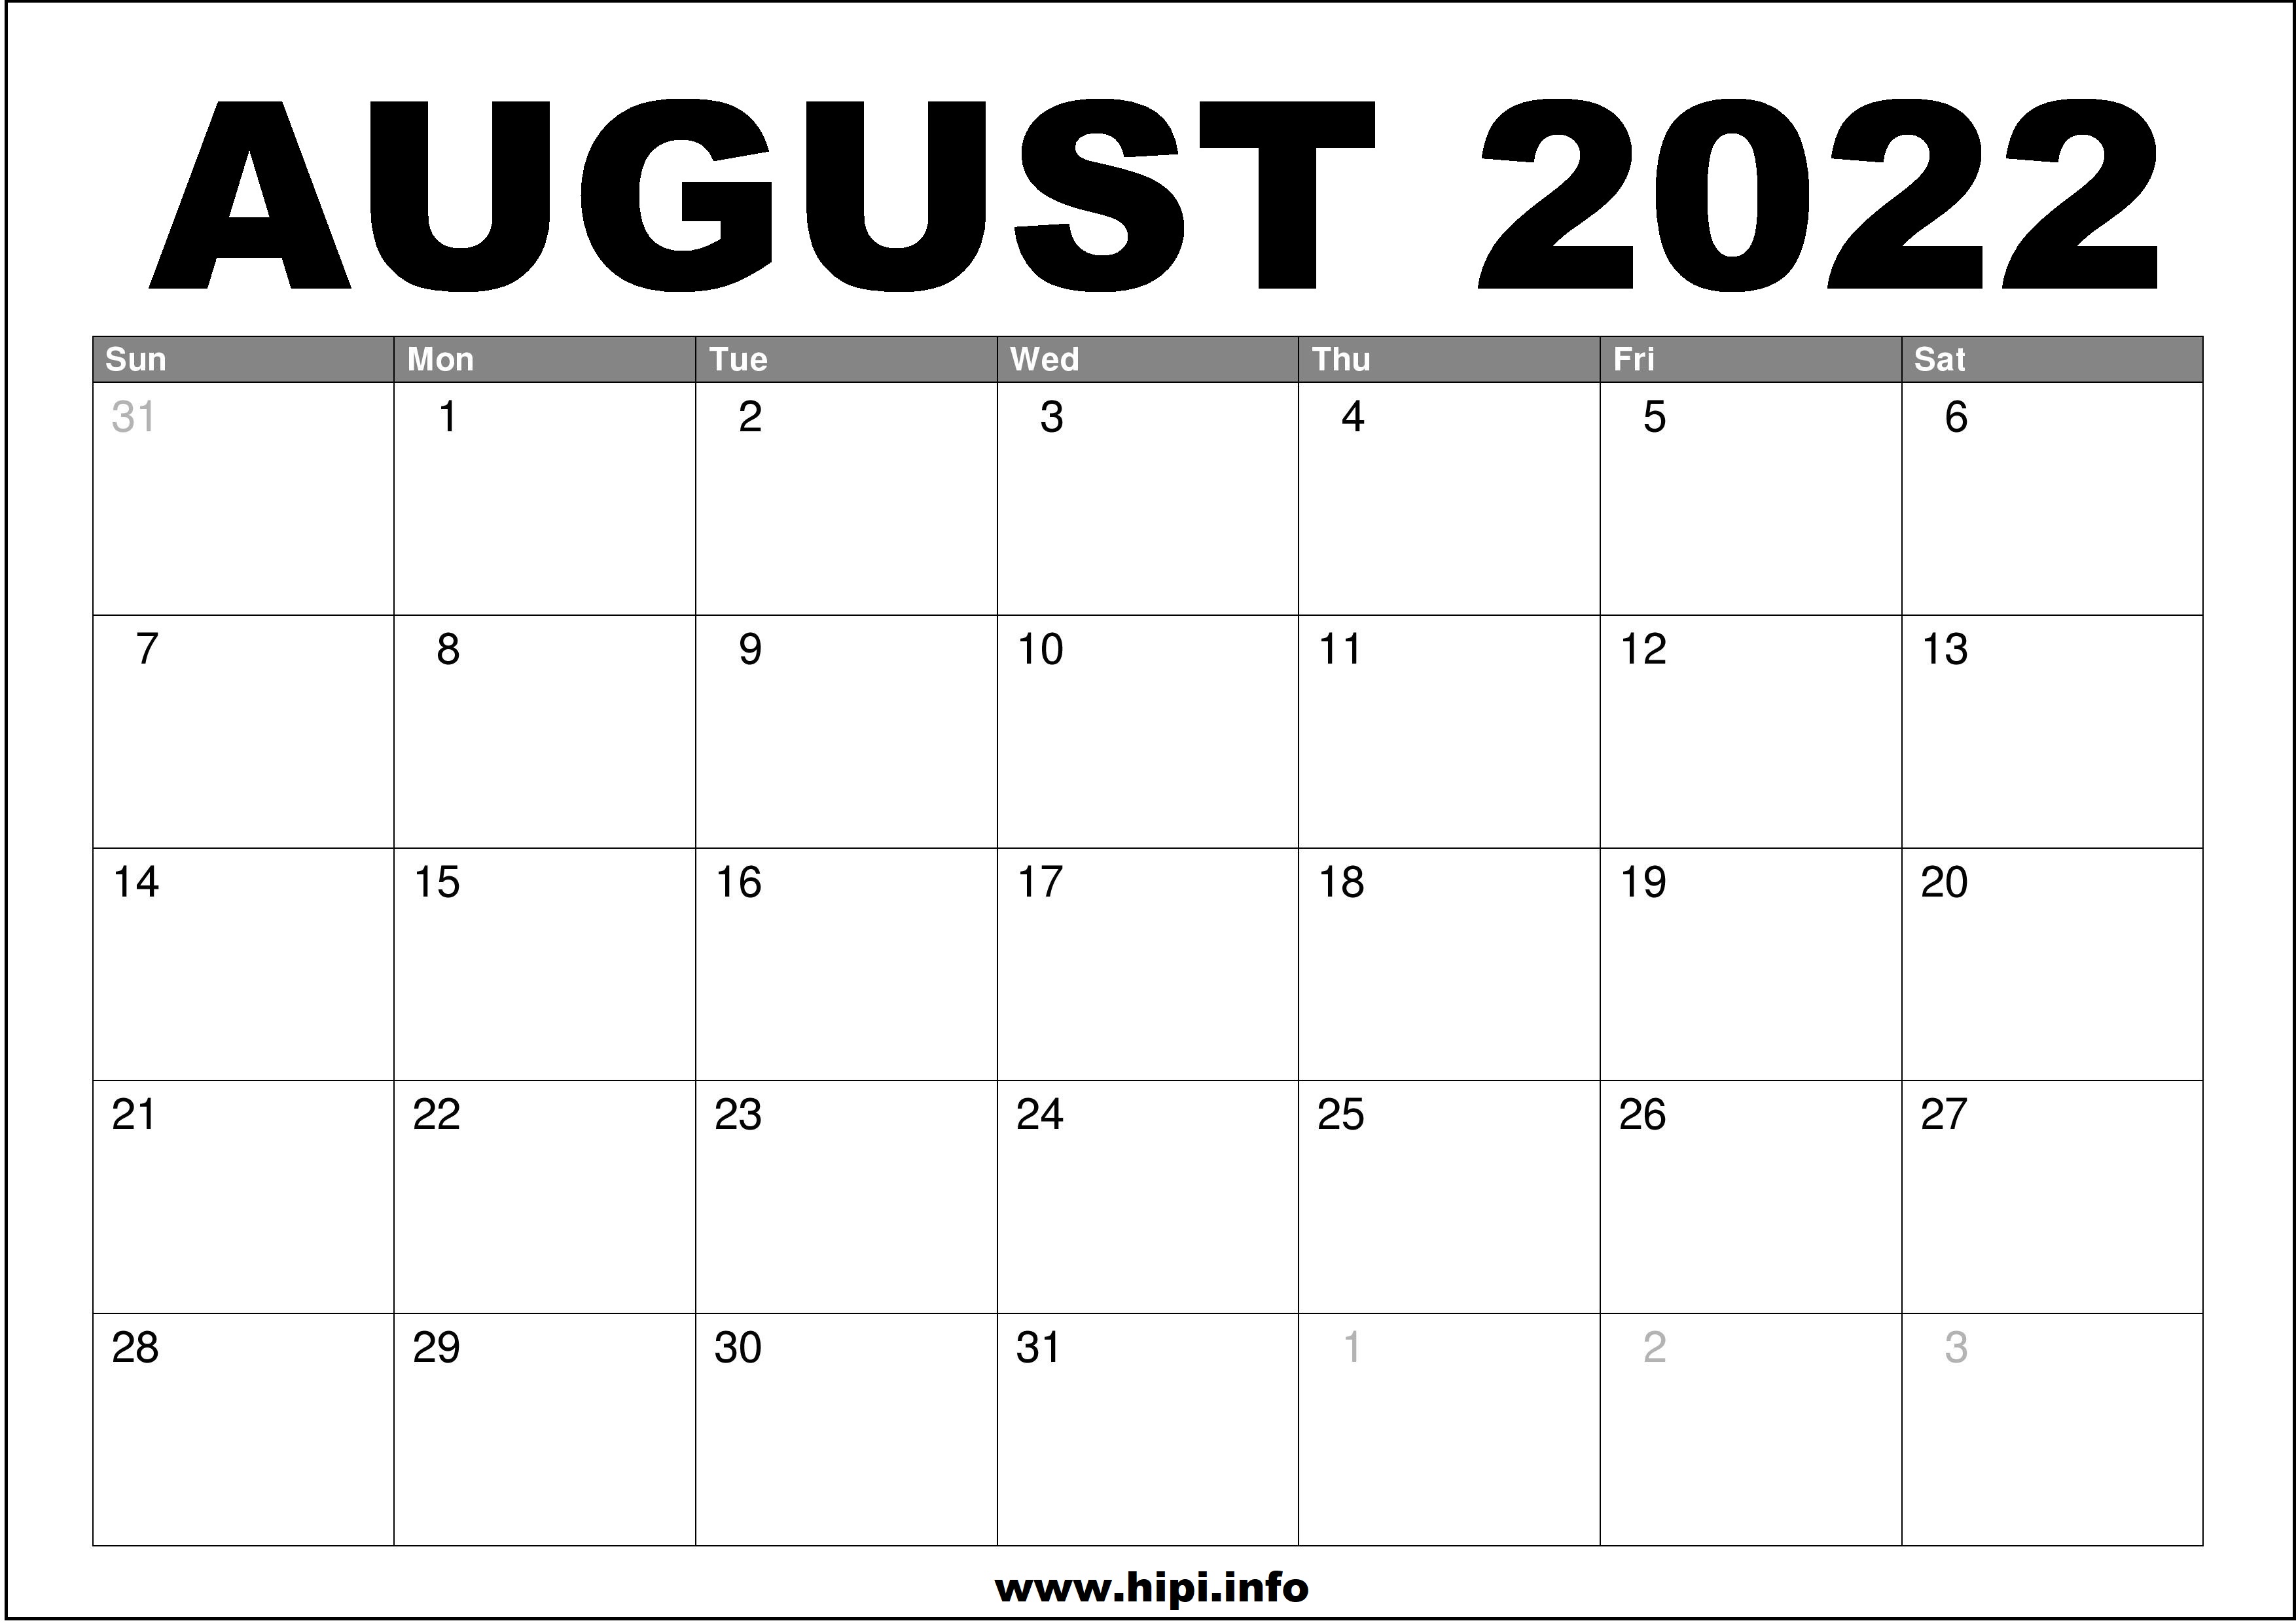 Month Calendar August 2022 August 2022 Calendar Printable Free - Hipi.info | Calendars Printable Free